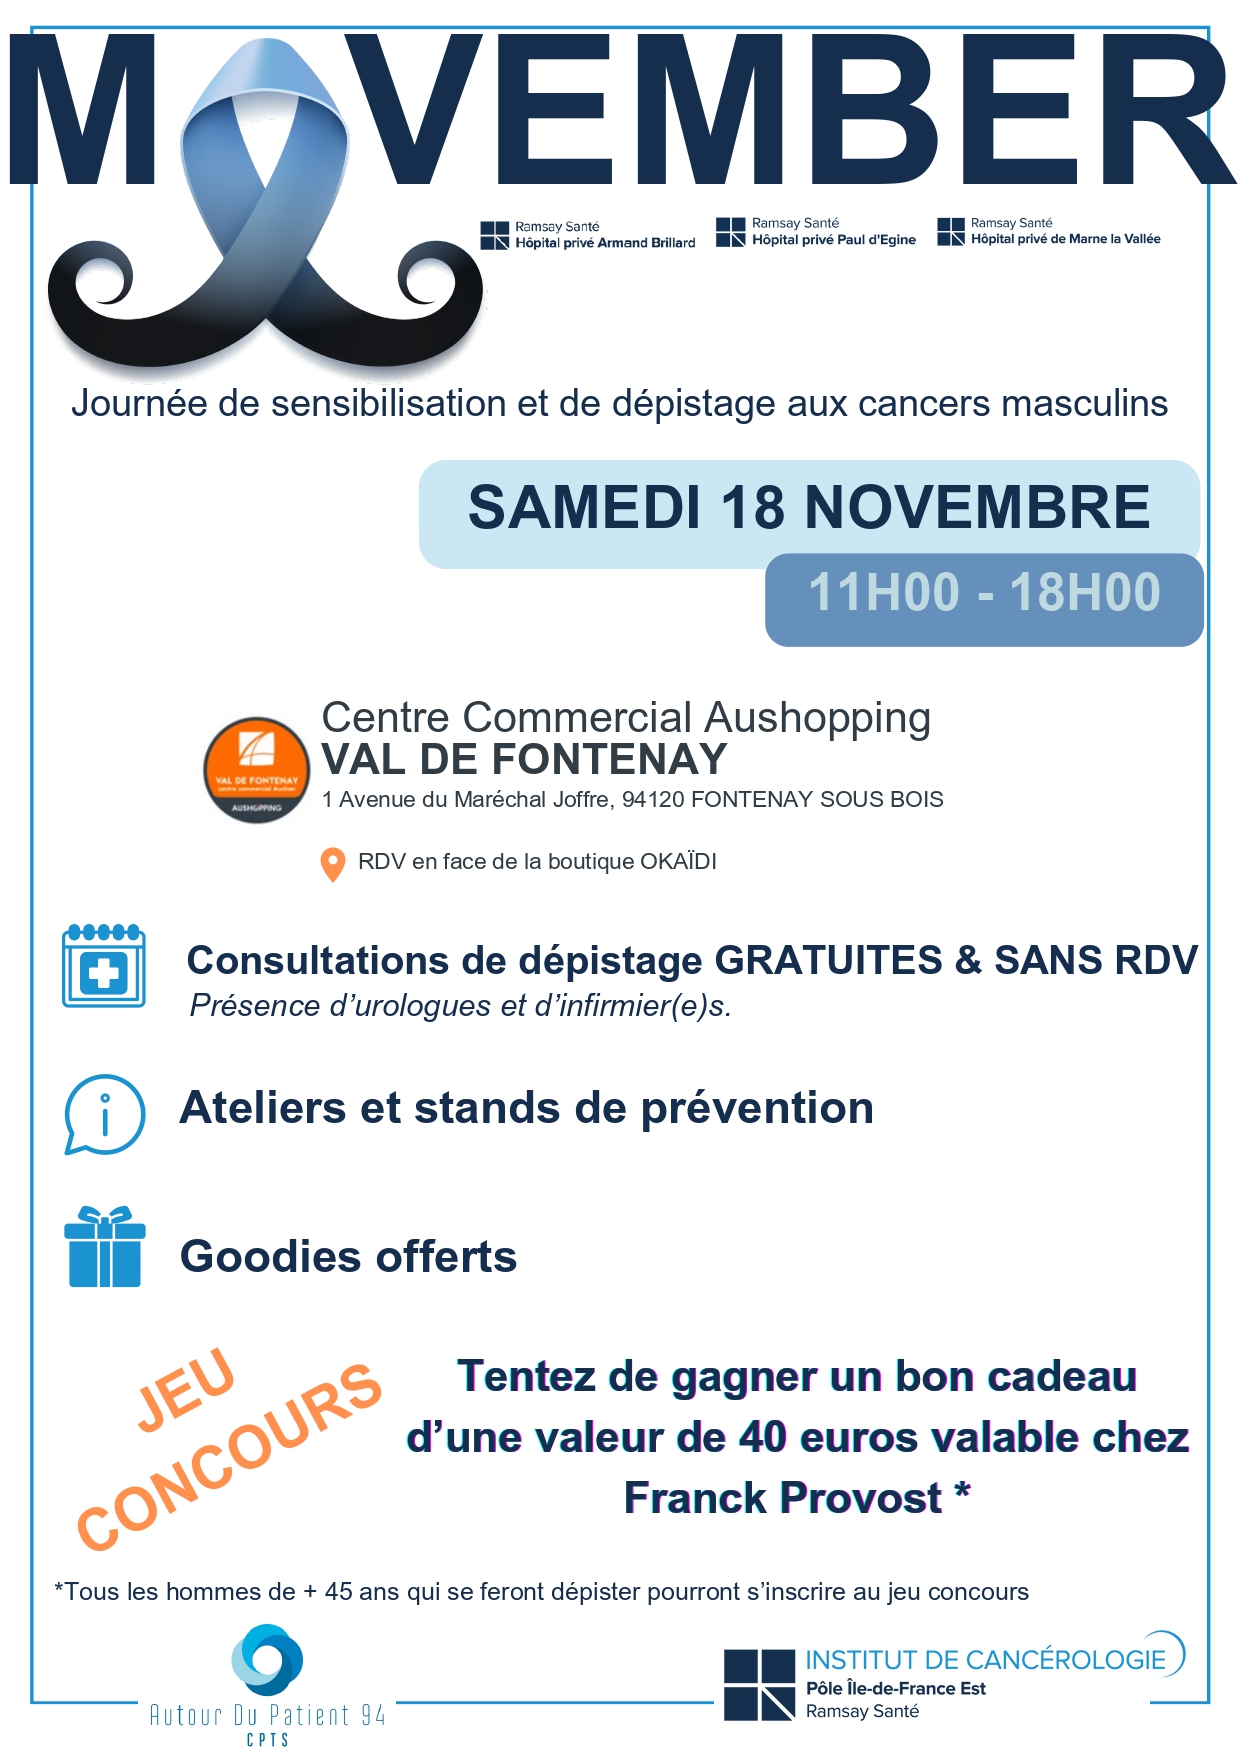 Affiche Movember au centre commercial Aushopping Val de Fontenay samedi 18 novembre de 11h à 18h